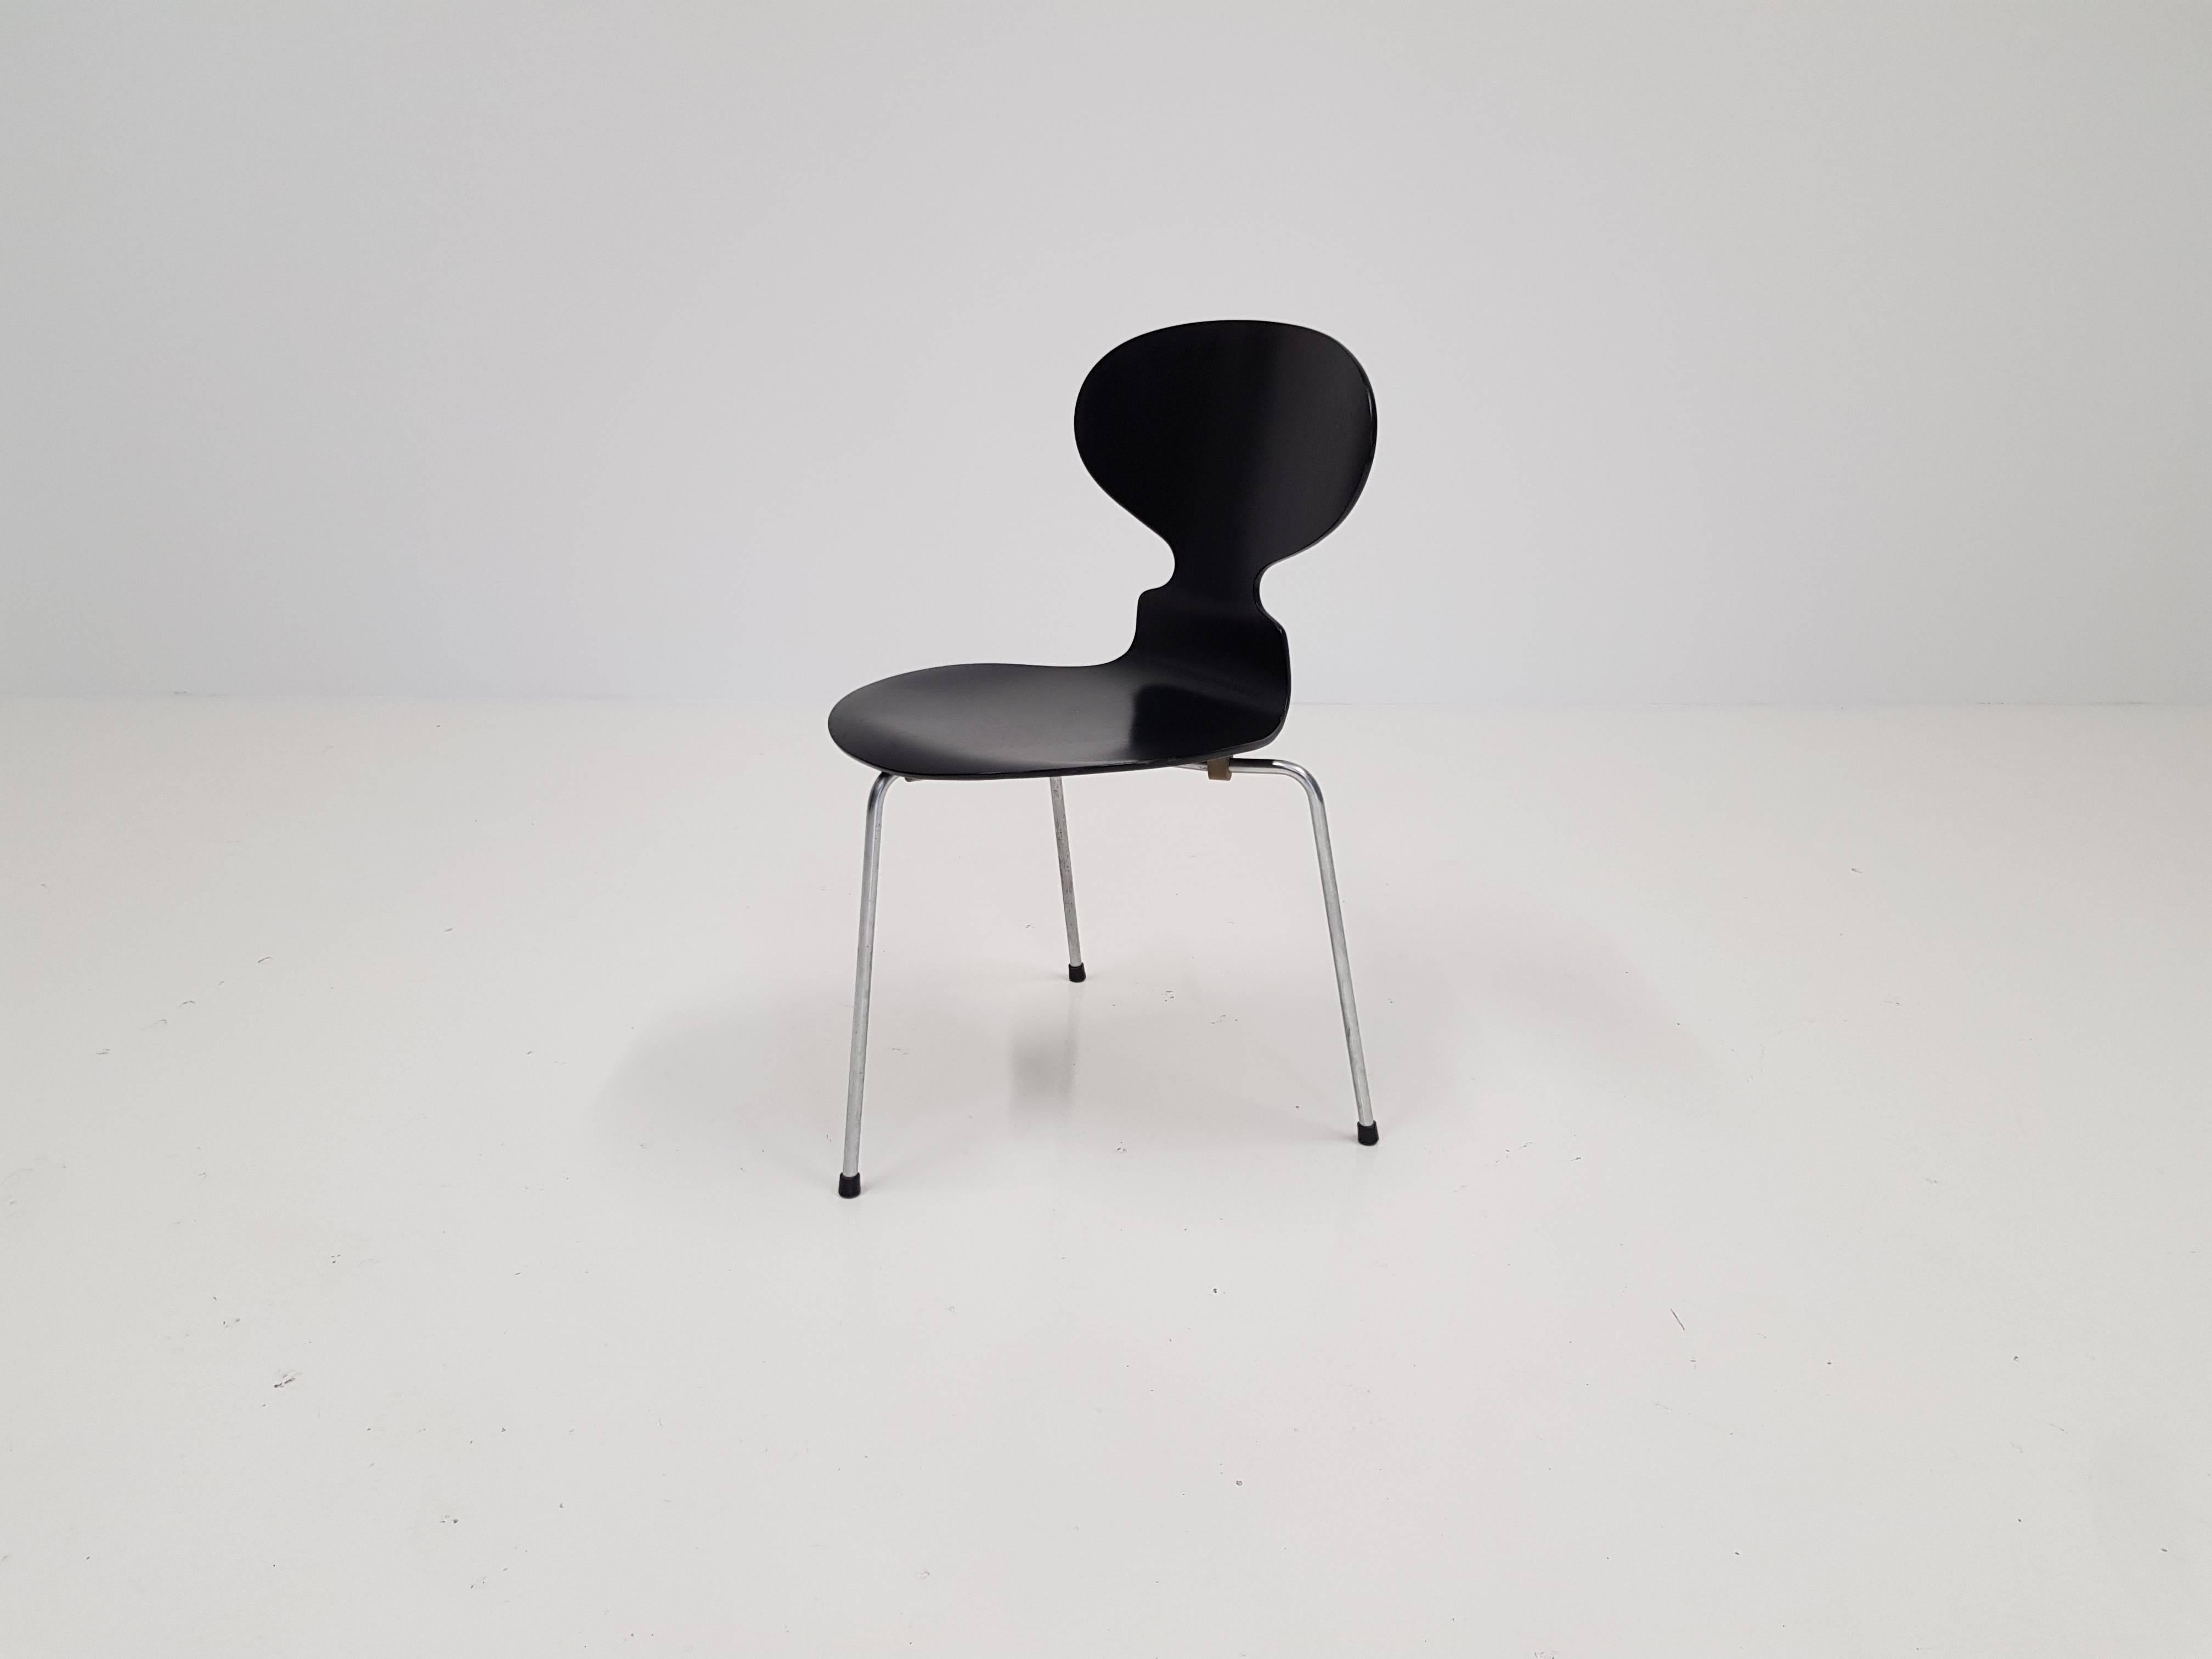 Steel Model 3100 'Ant' Chair by Arne Jacobsen for Fritz Hansen, Designed, 1952